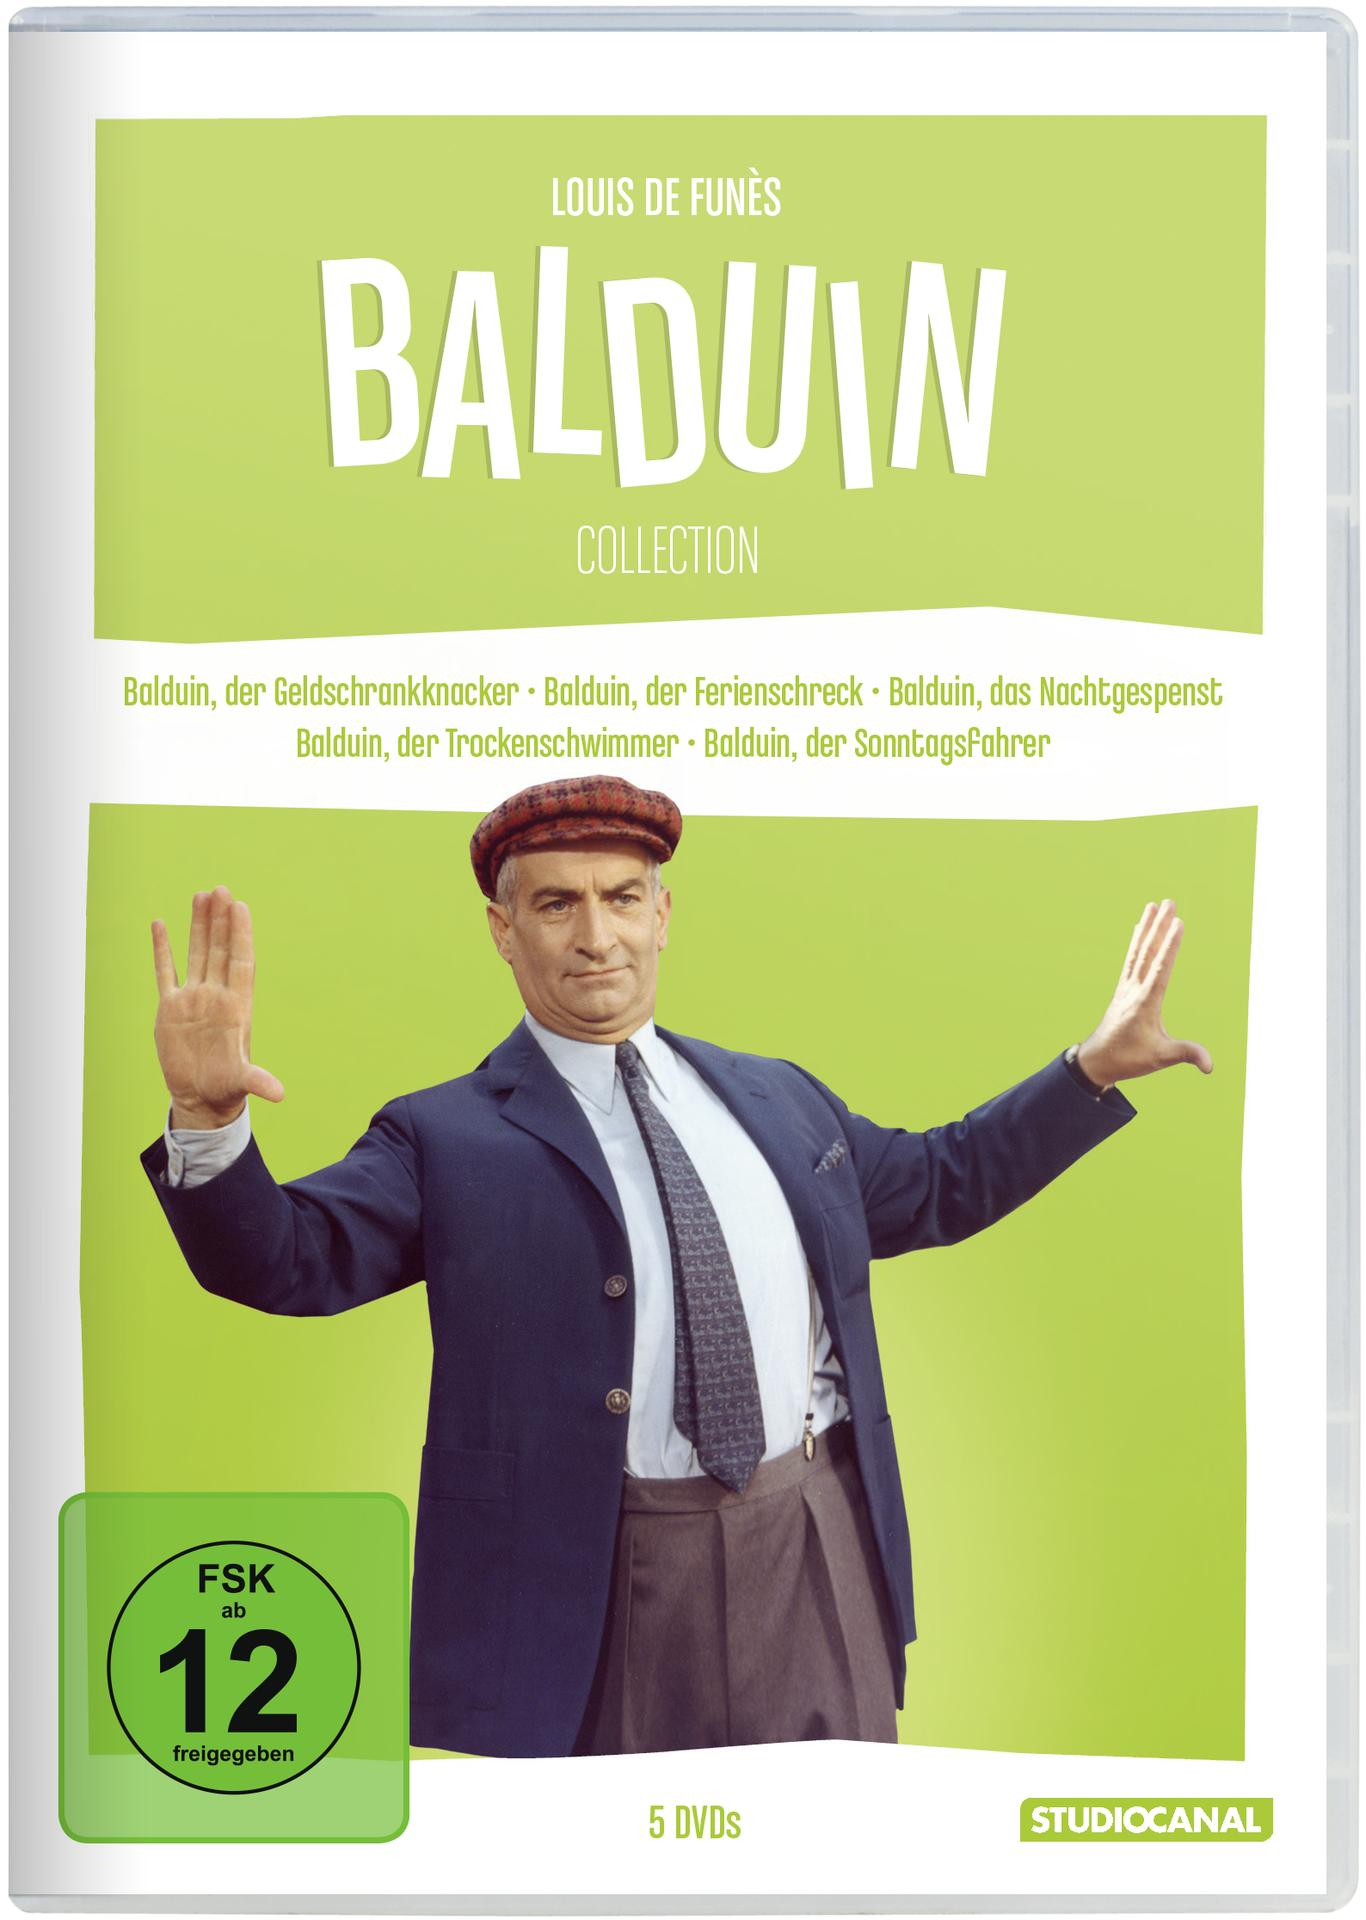 de Die Funès Collection Balduin / DVD Louis